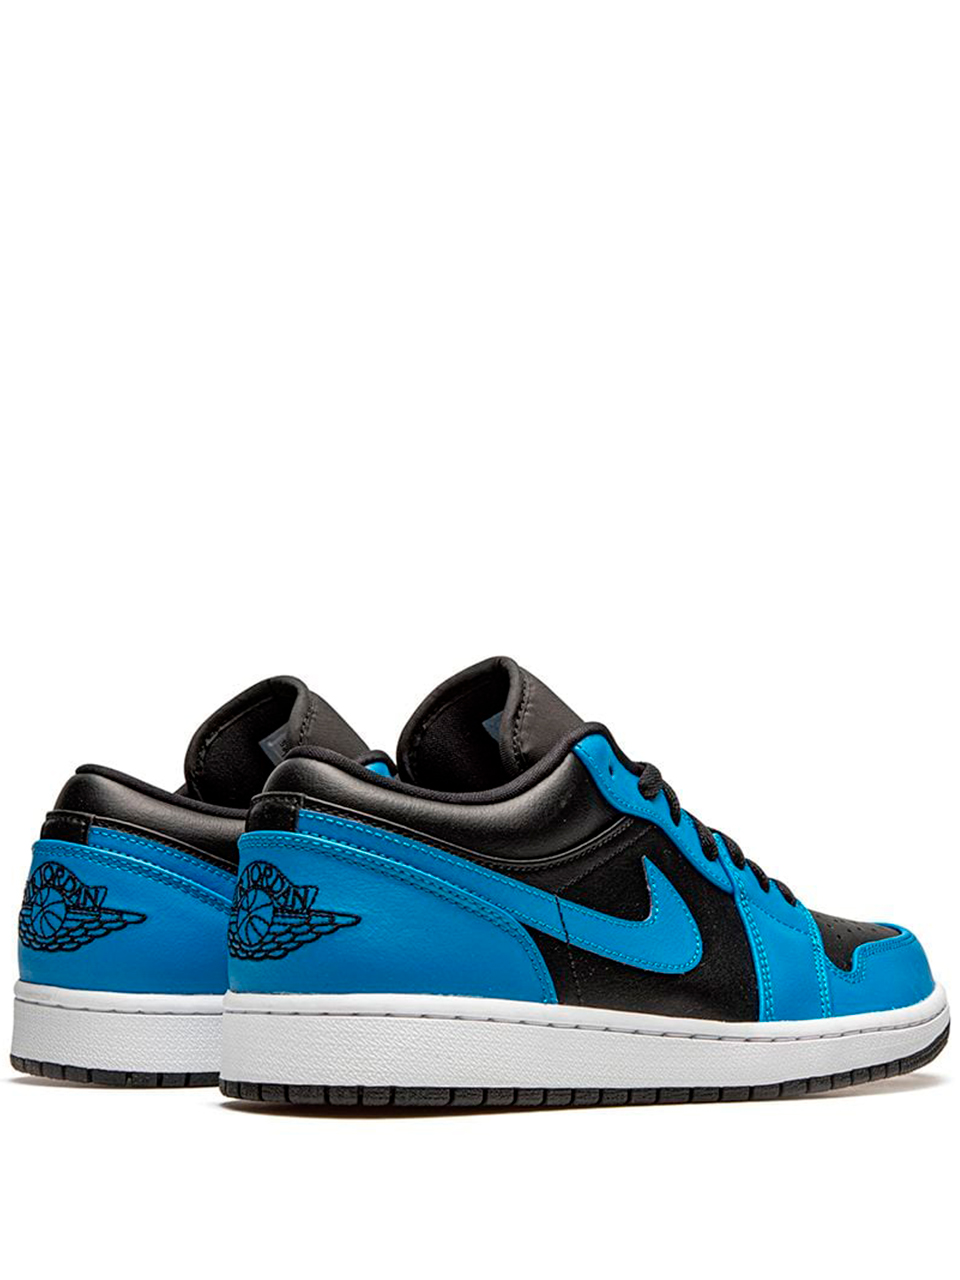 Imagem de: Tênis Nike Air Jordan 1 Low Azul e Preto